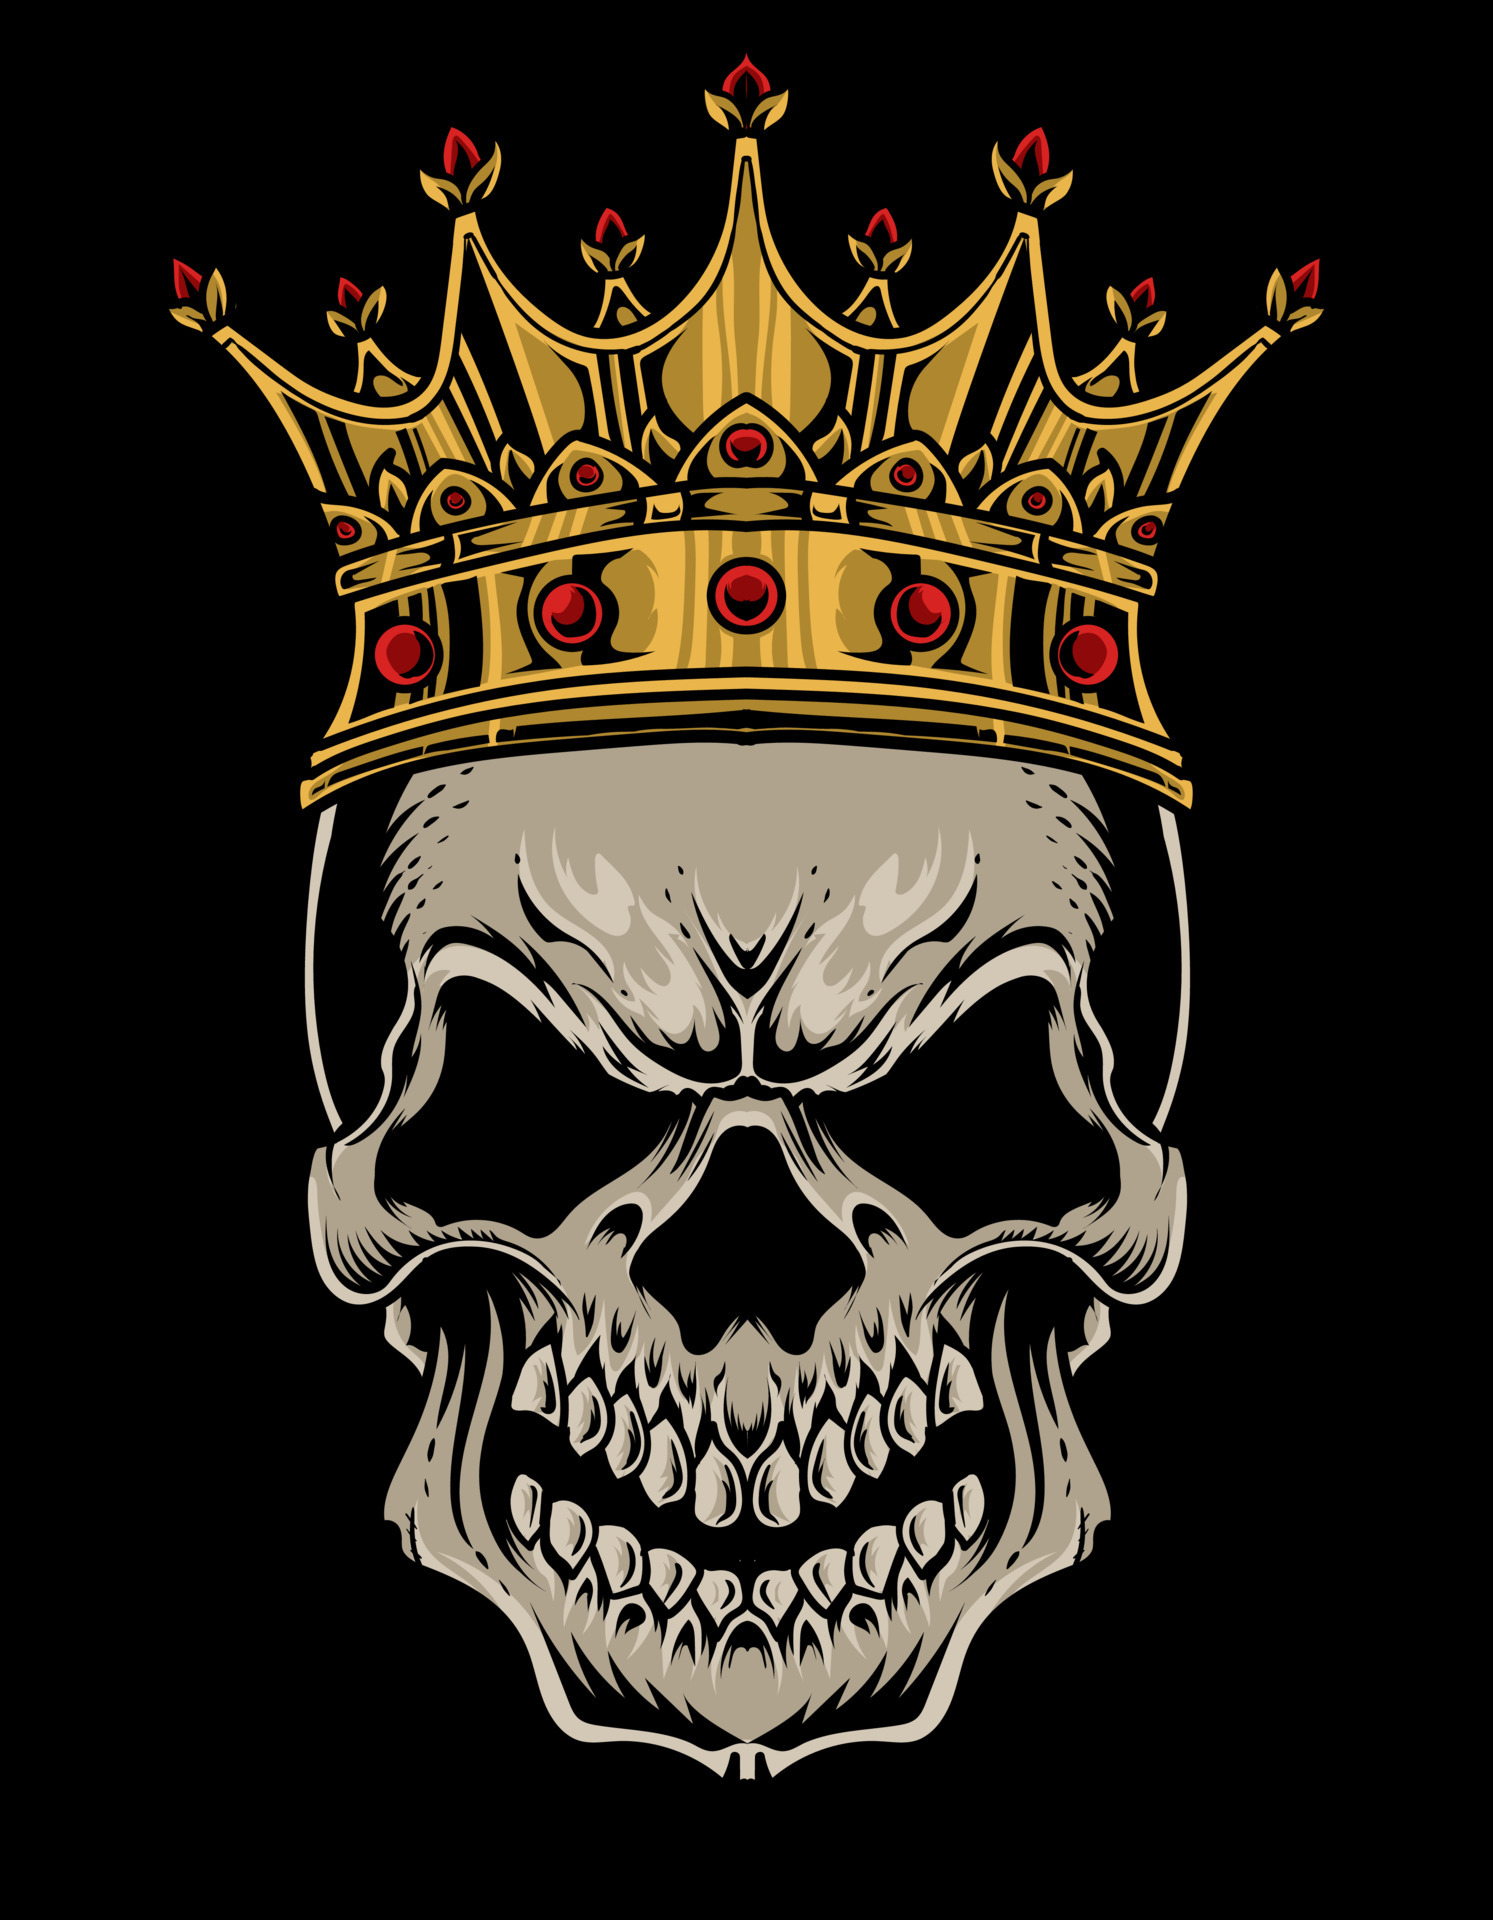 Skull King, Image